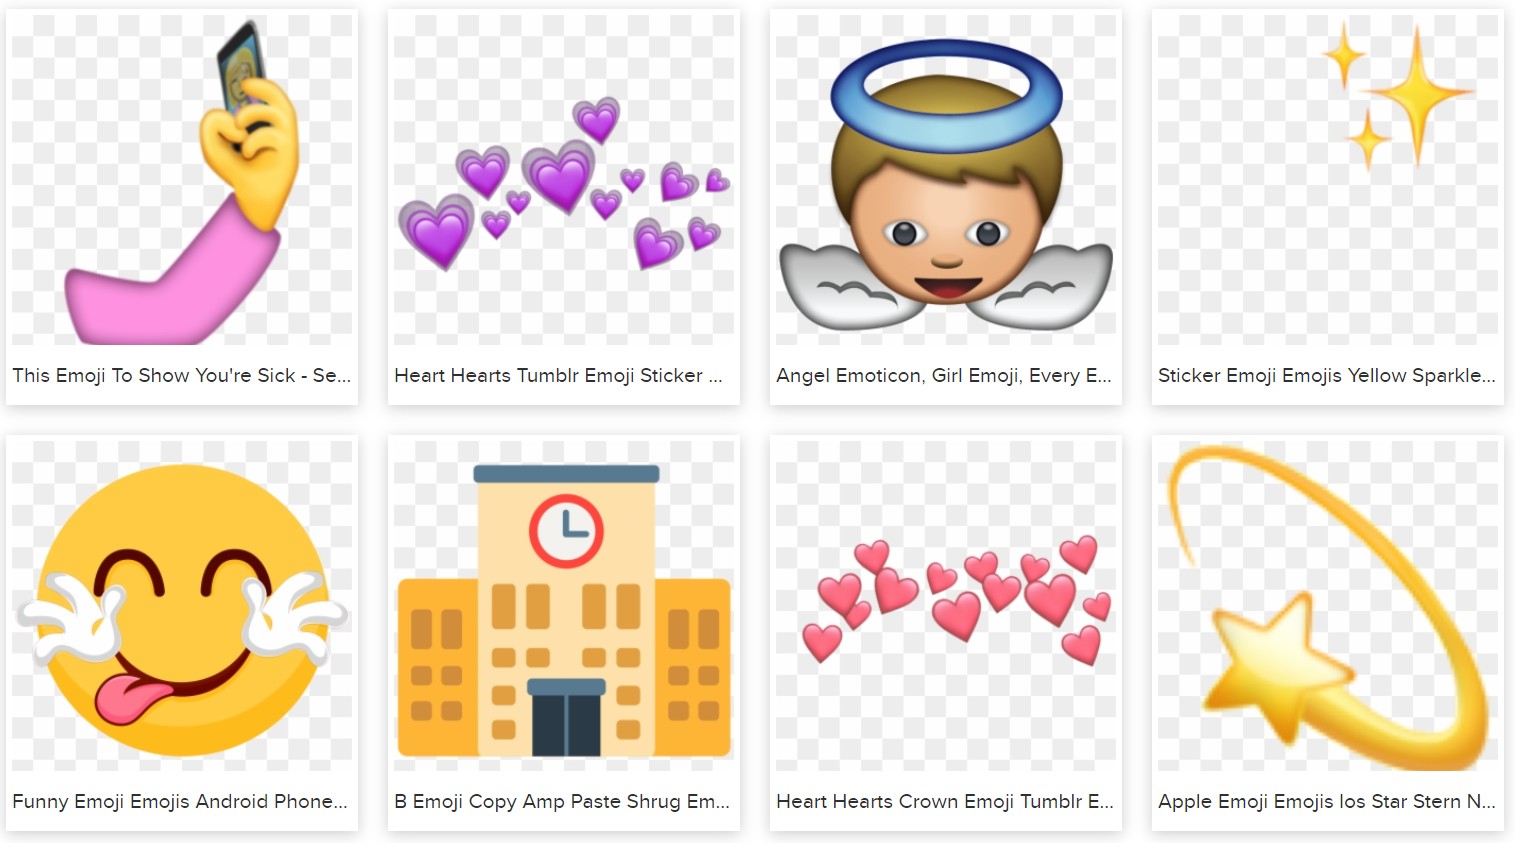 download transparent emoji from pnfind